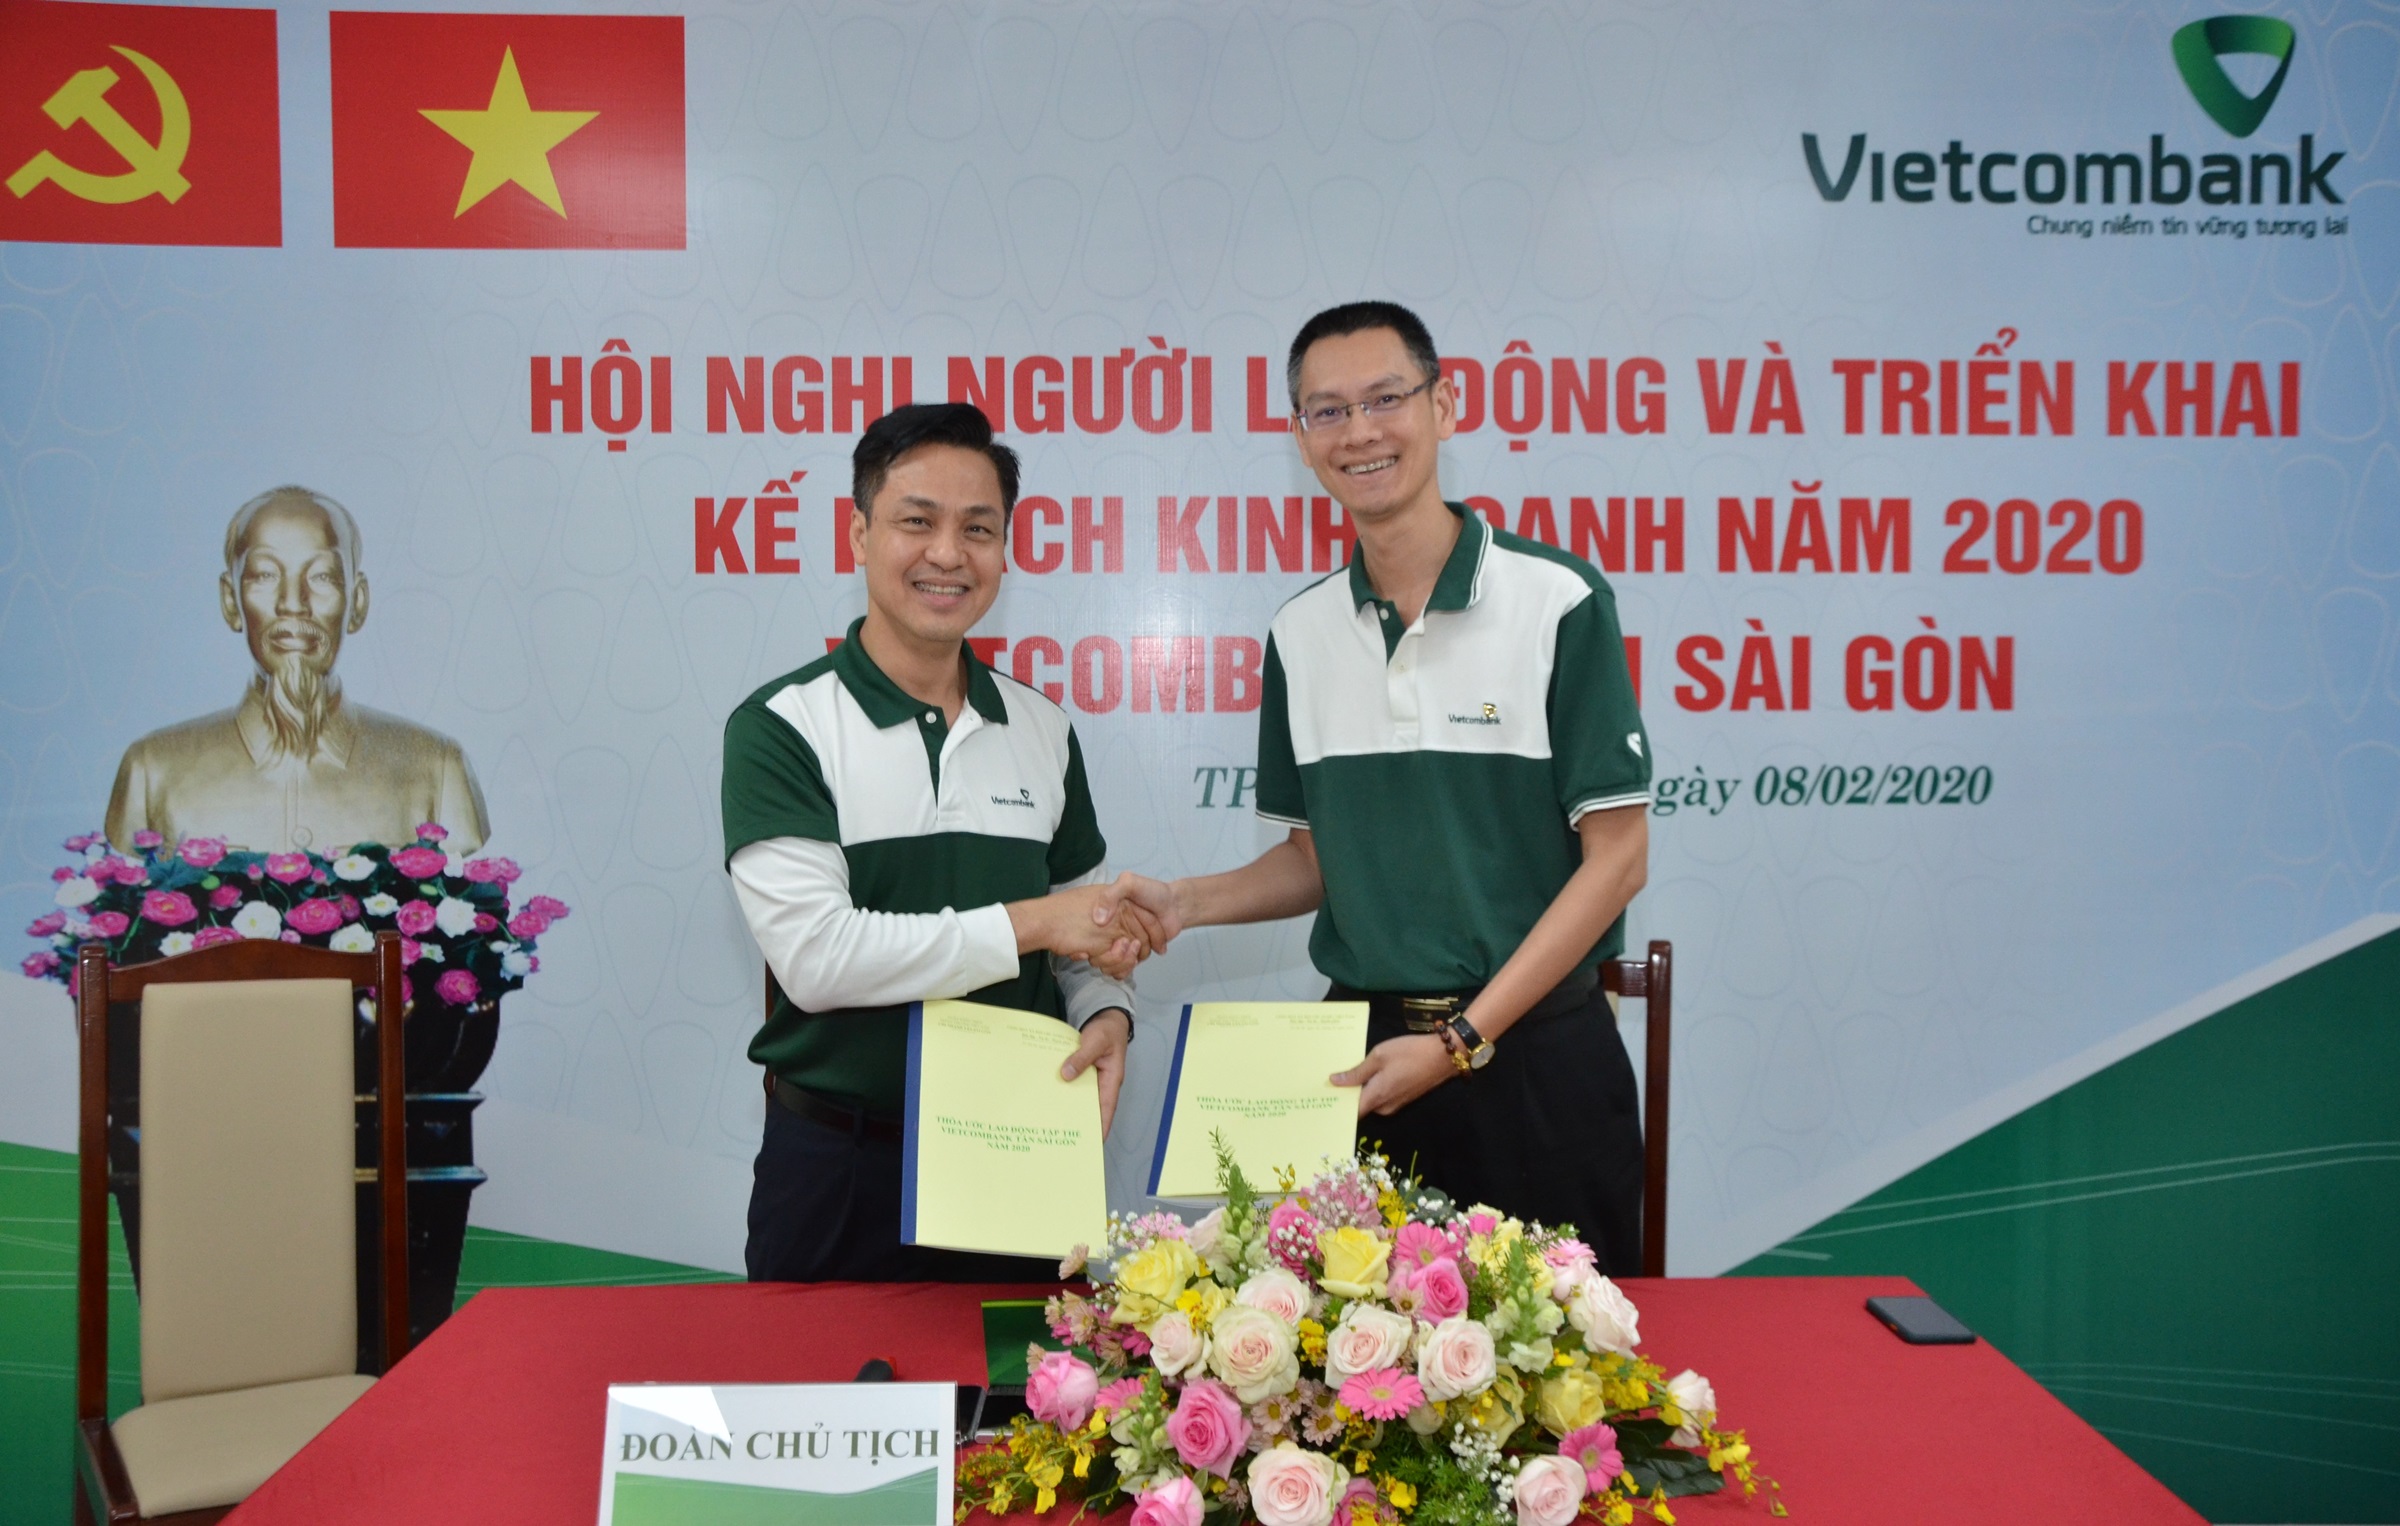 Vietcombank Tân Sài Gòn tổ chức thành công Hội nghị Người lao động và triển khai nhiệm vụ kinh doanh năm 2020